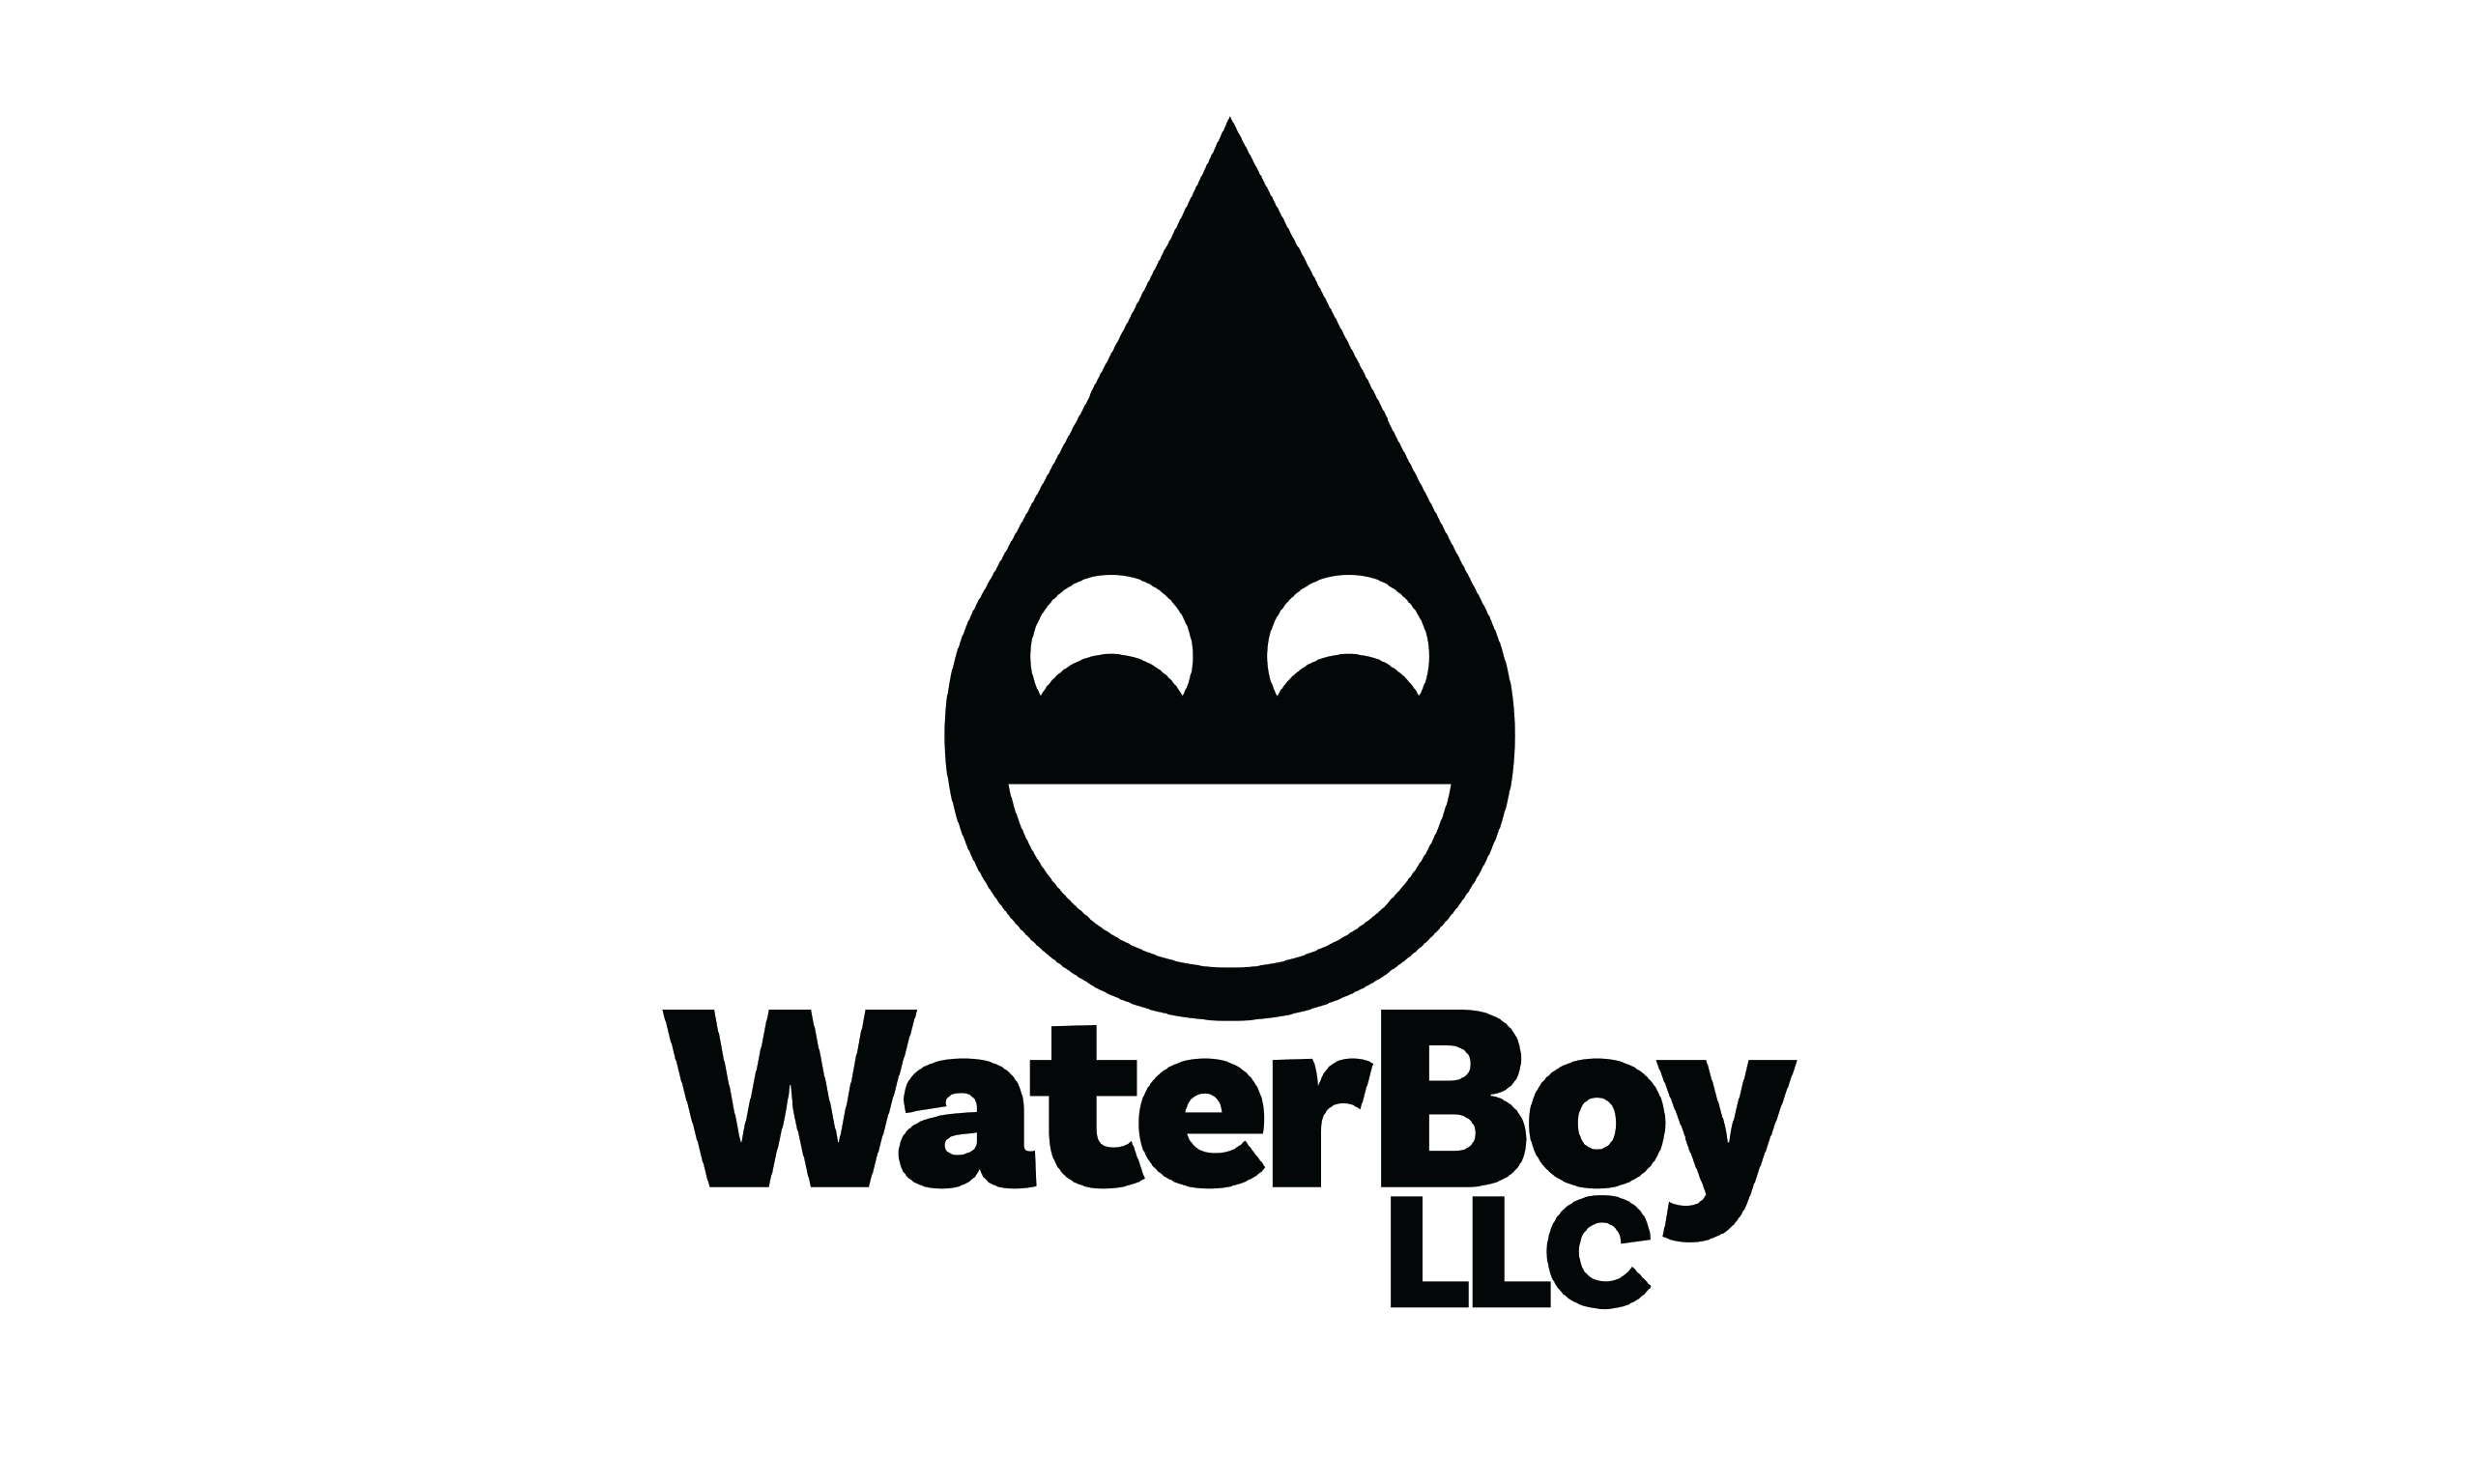 Boy Logo - The Water Boy Logo - Olympia Graphics Company